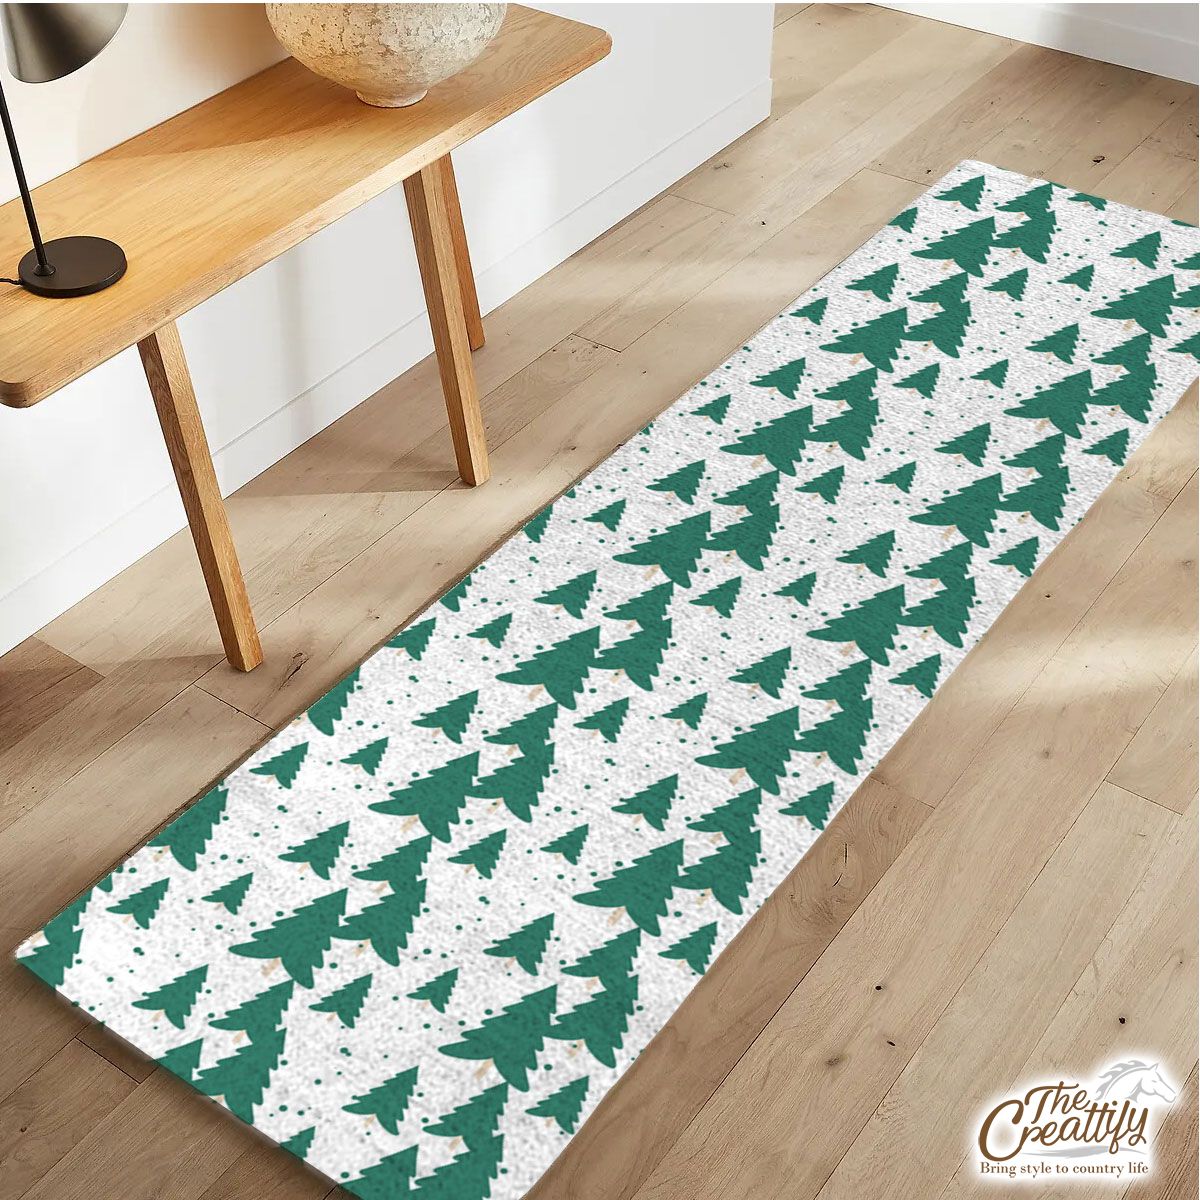 White And Green Christmas Tree Runner Carpet